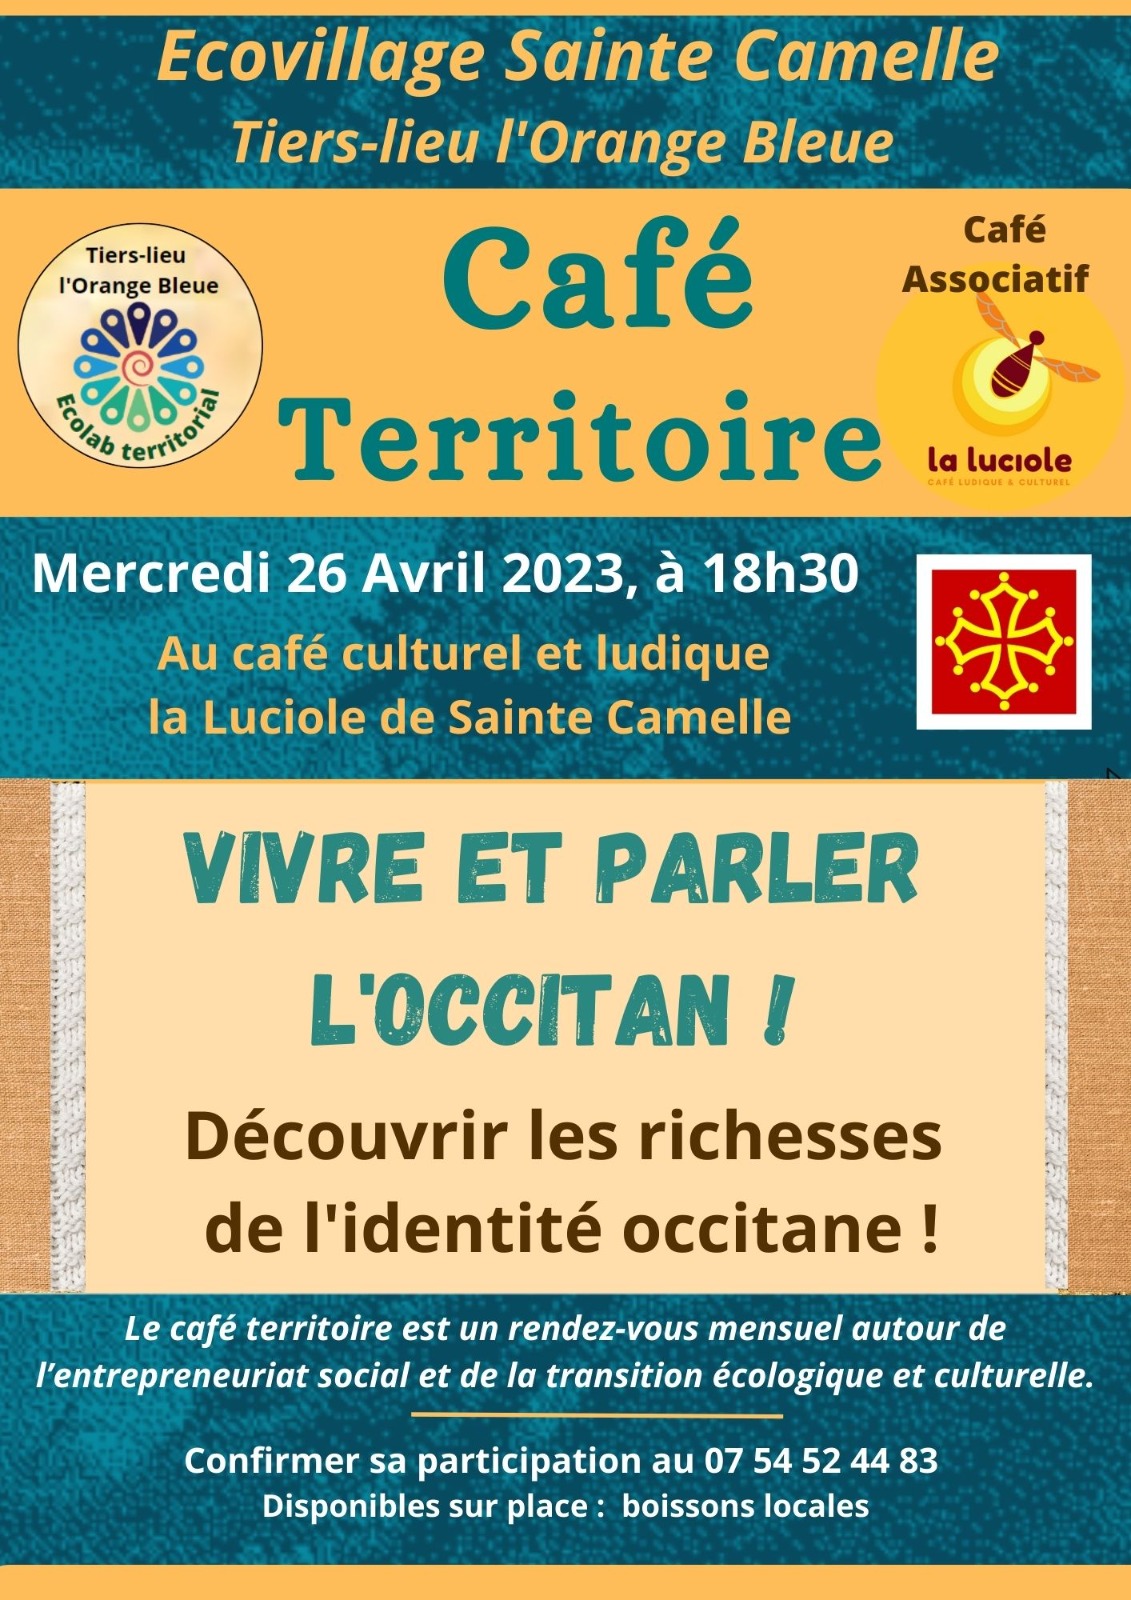 Cafe Territoire occitan avril 2023 1